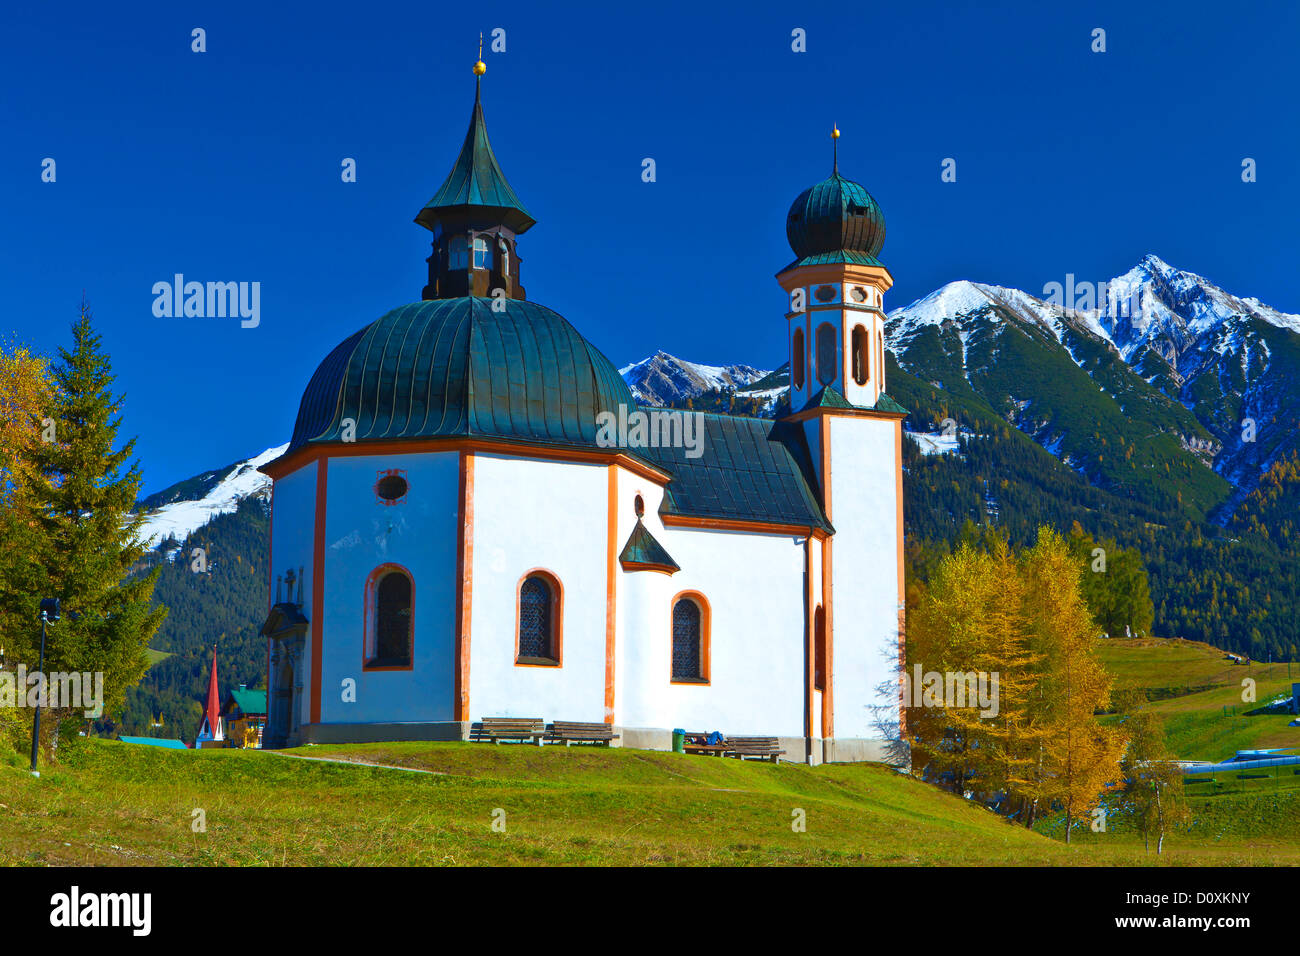 Austria, Europe, Tyrol, Tirol, Seefeld, Seekirchl, church, chapel, religion, mountain church, mountain, Reither Spitzer, Reither Stock Photo